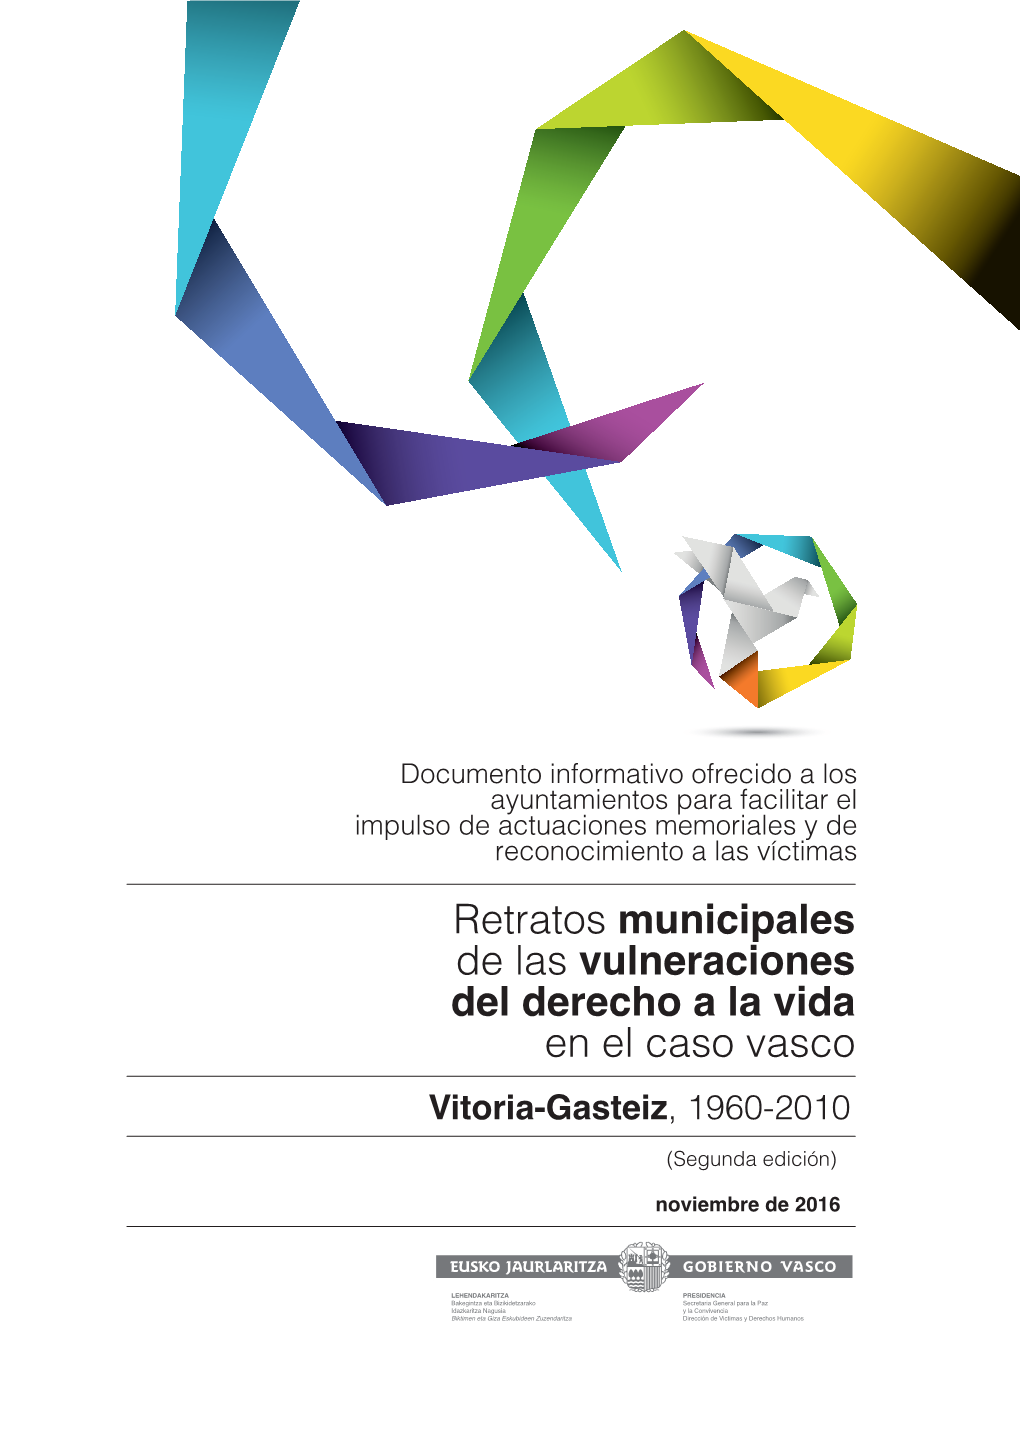 Vitoria-Gasteiz, 1960-2010 (Segunda Edición)